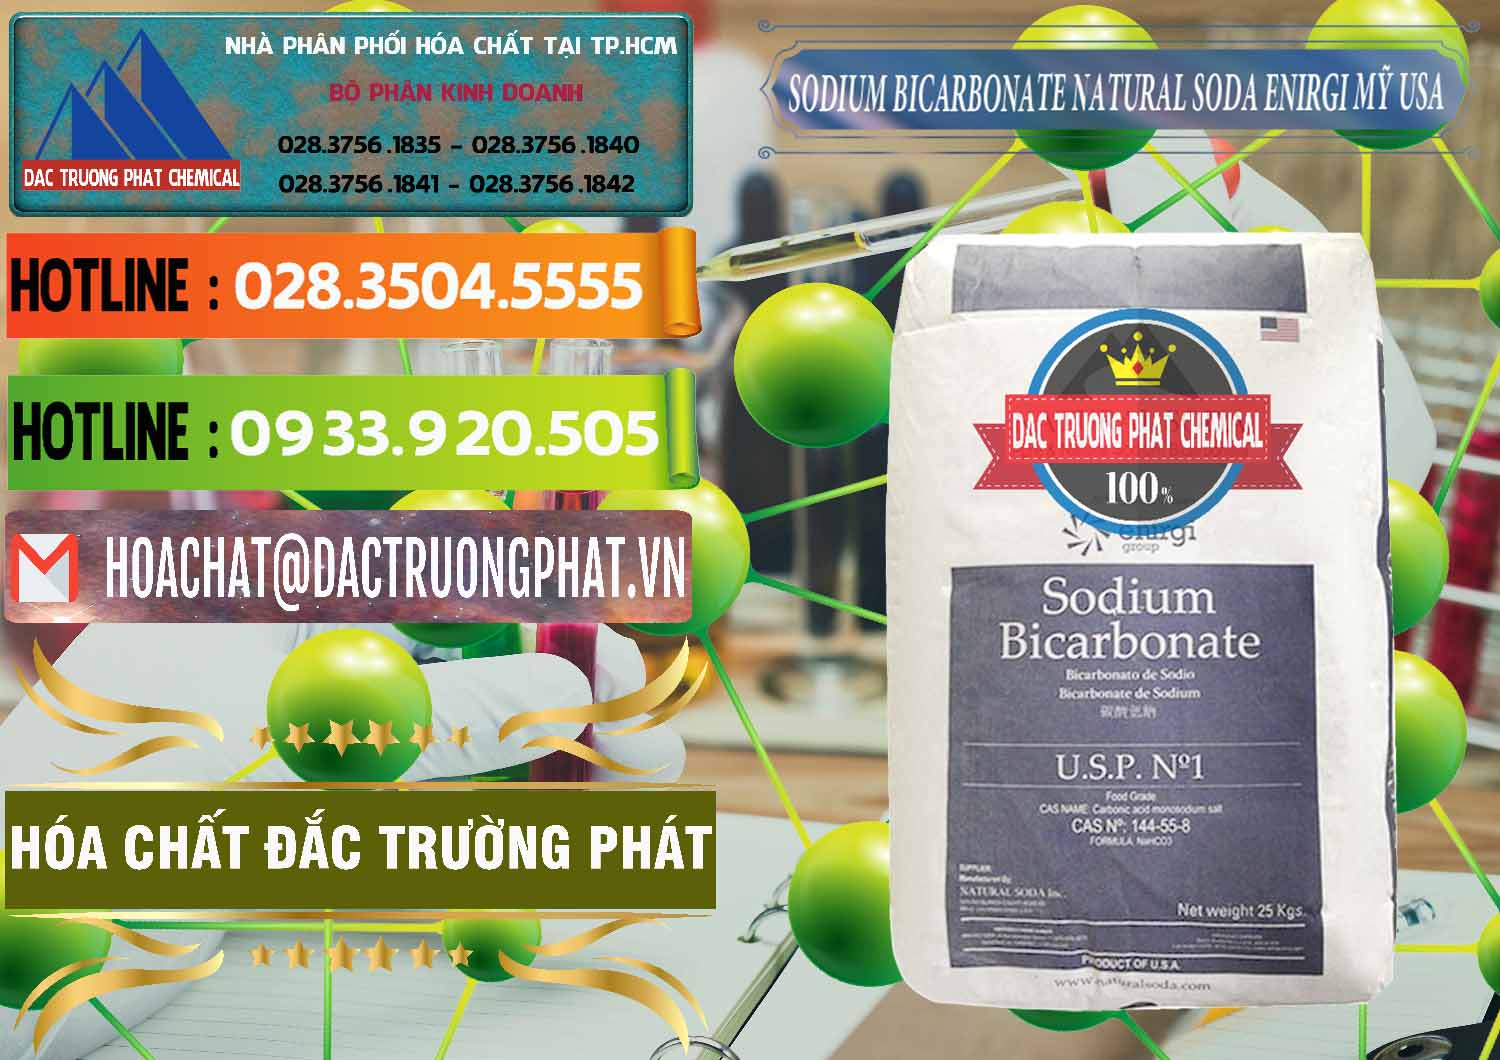 Cty phân phối _ bán Sodium Bicarbonate – Bicar NaHCO3 Food Grade Natural Soda Enirgi Mỹ USA - 0257 - Công ty chuyên cung cấp _ kinh doanh hóa chất tại TP.HCM - cungcaphoachat.com.vn